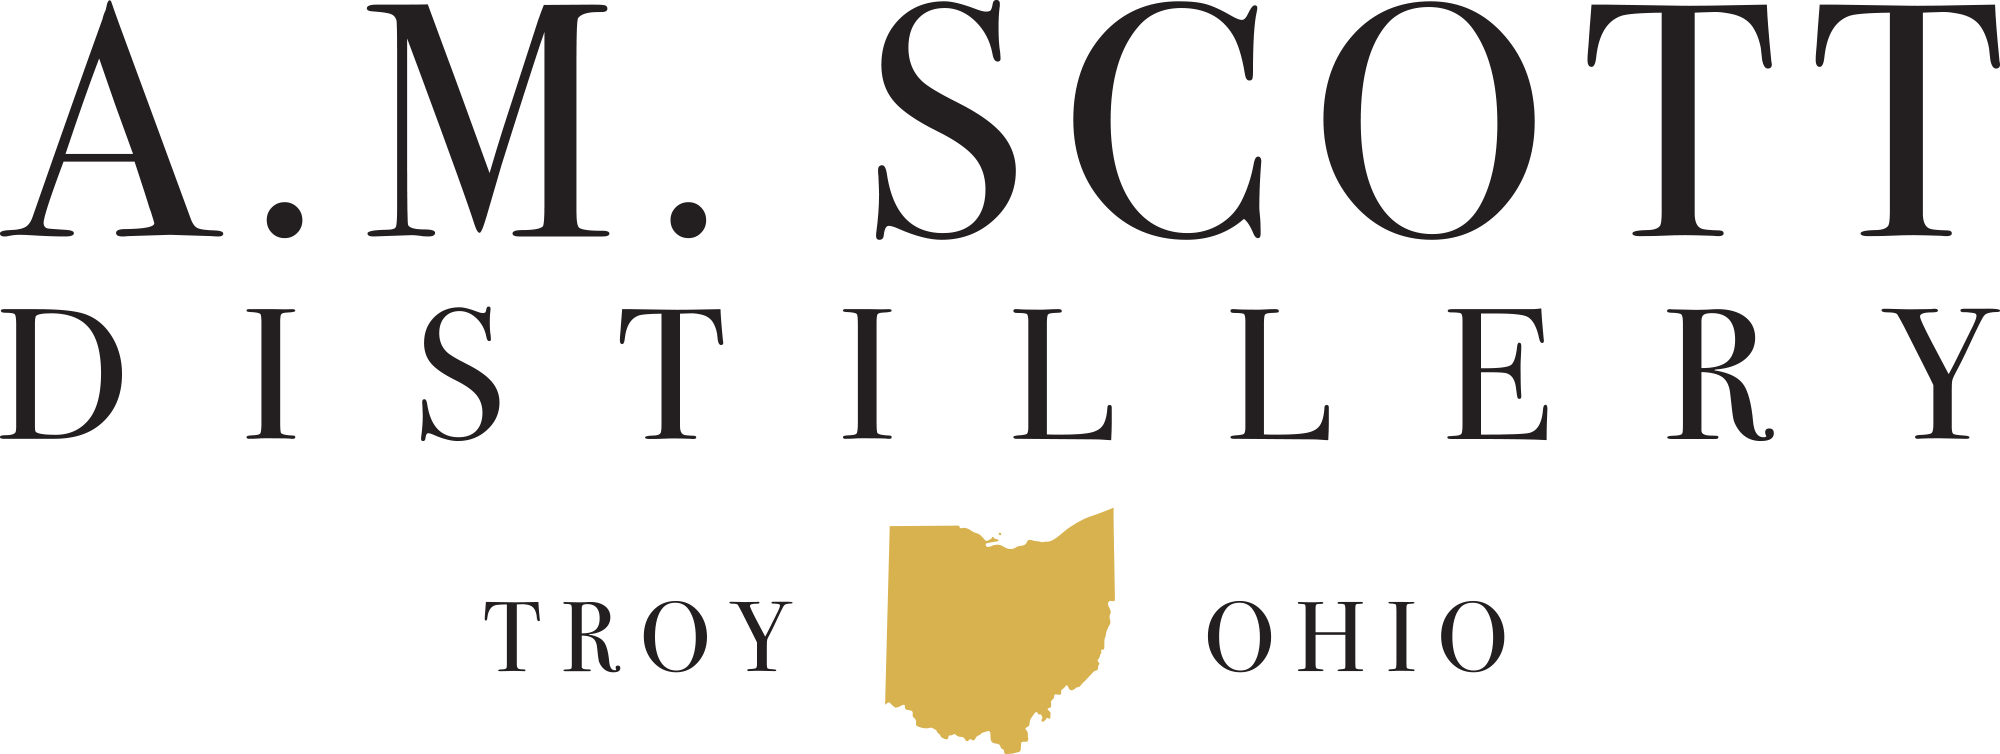 A.M. Scott Distillery | Troy